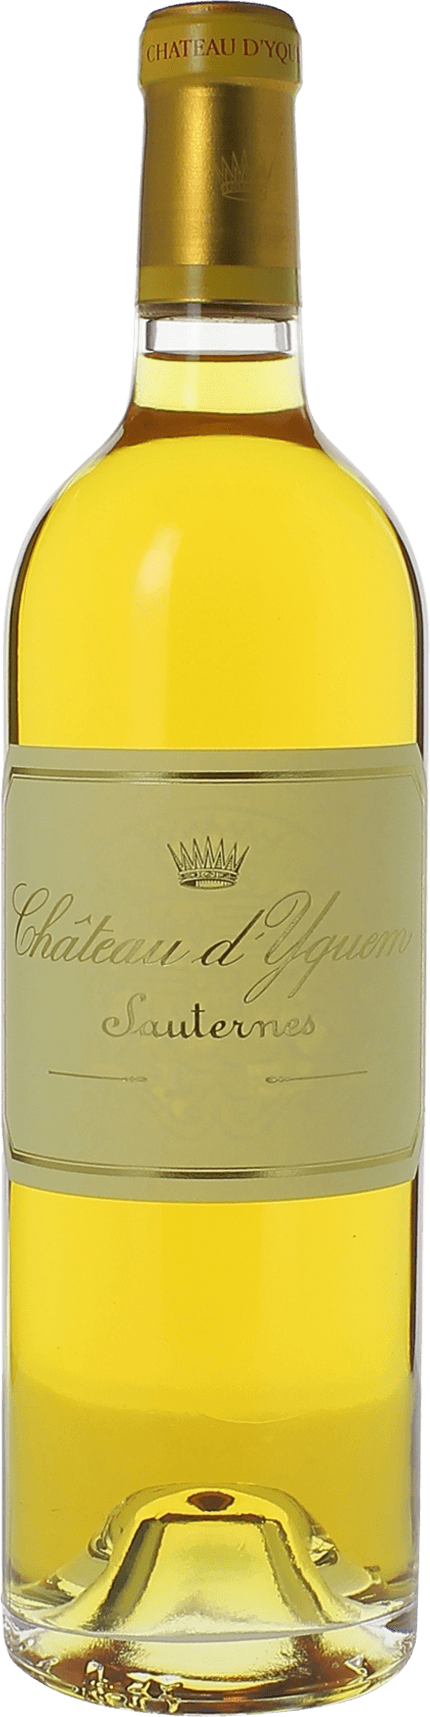 Yquem 1953 1er Grand cru class Sauternes, Bordeaux blanc